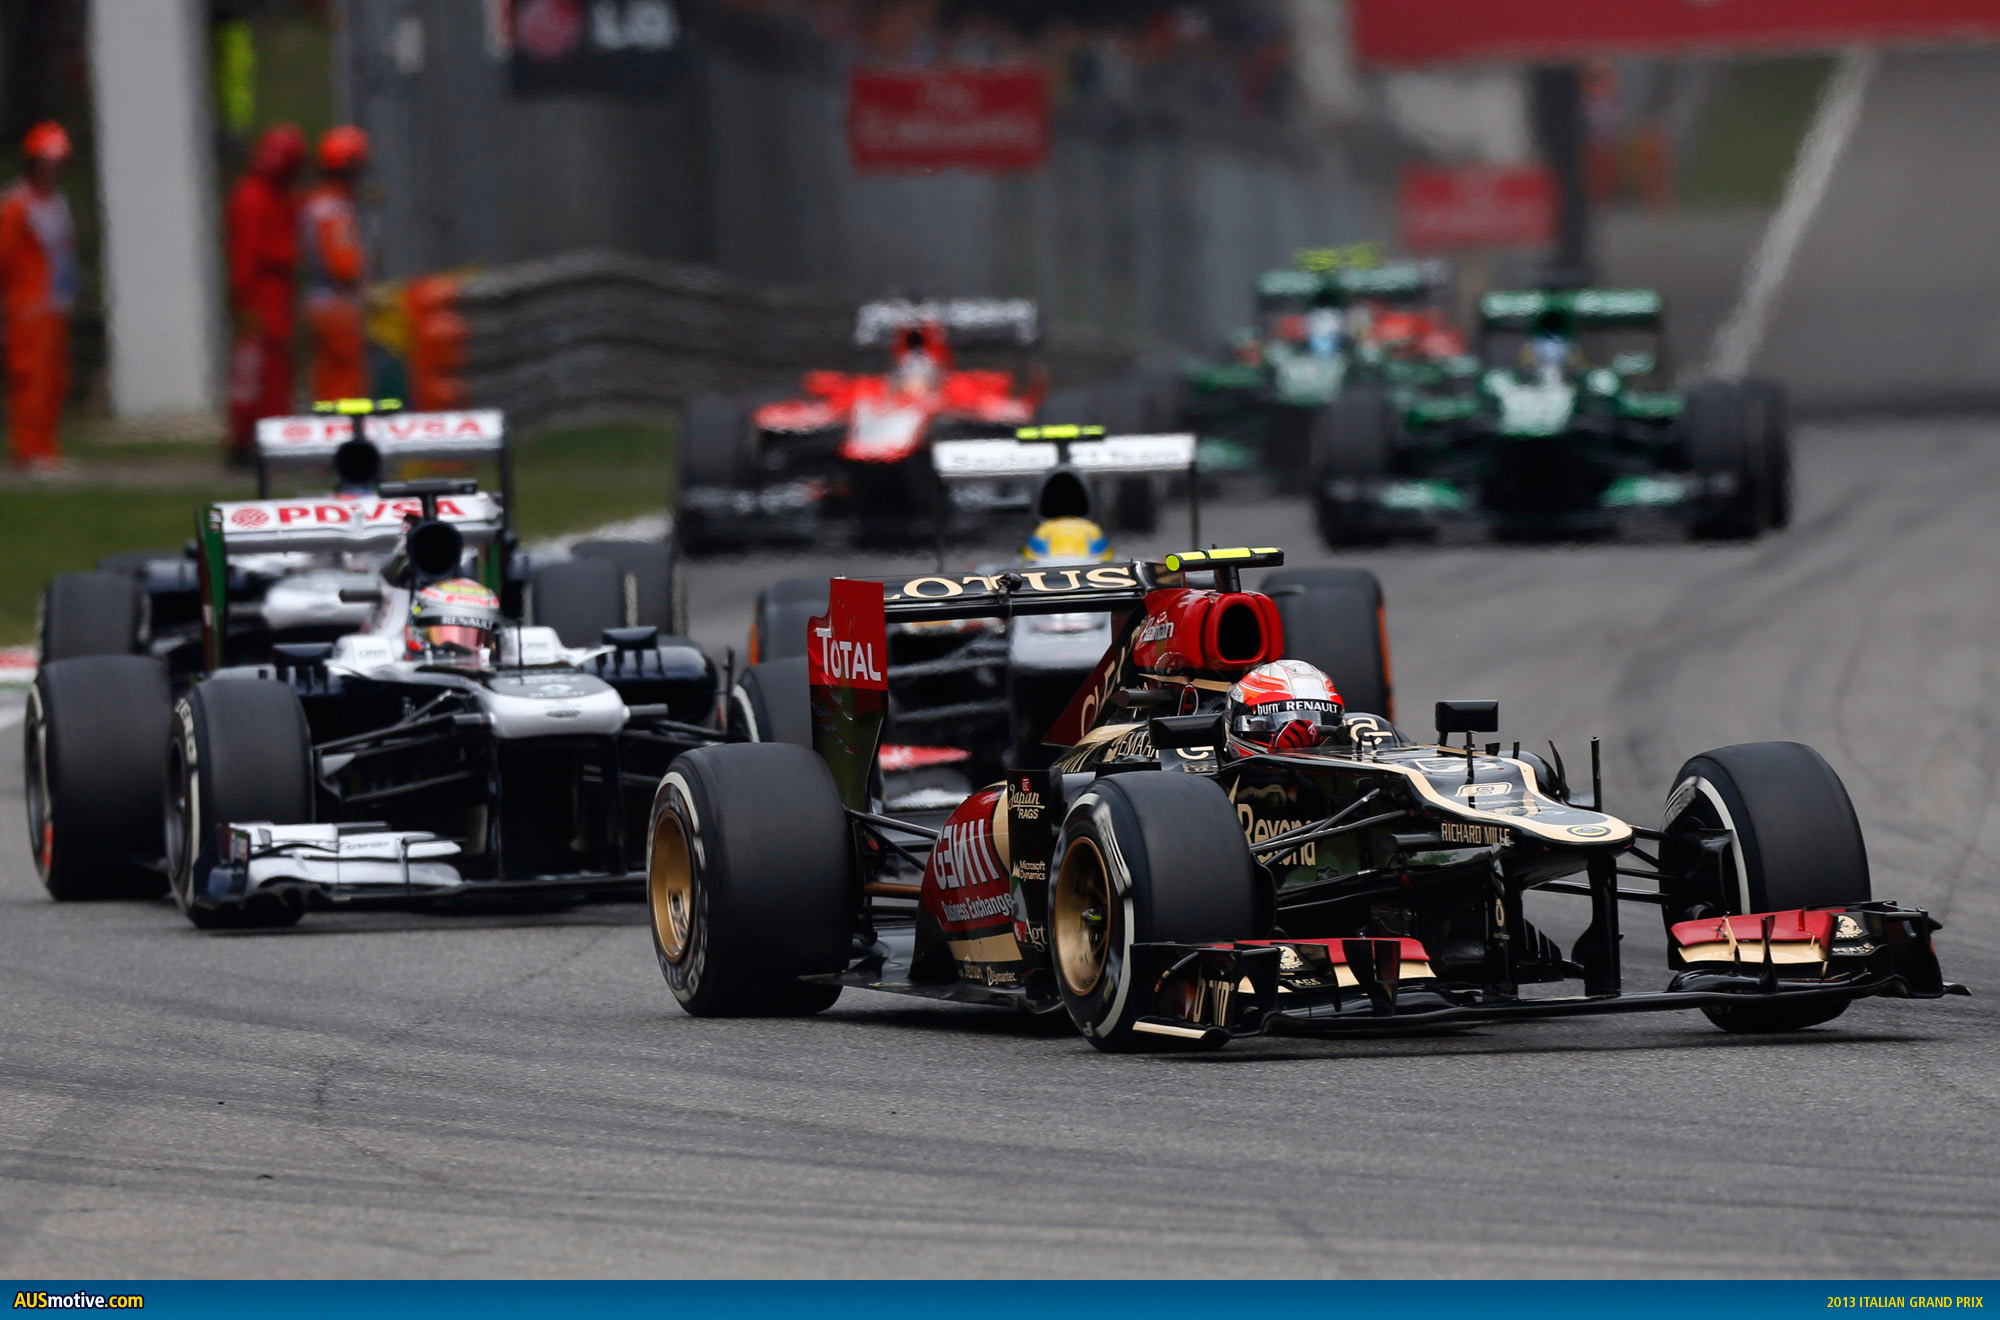 AUSmotive.com » 2013 Italian Grand Prix in pictures